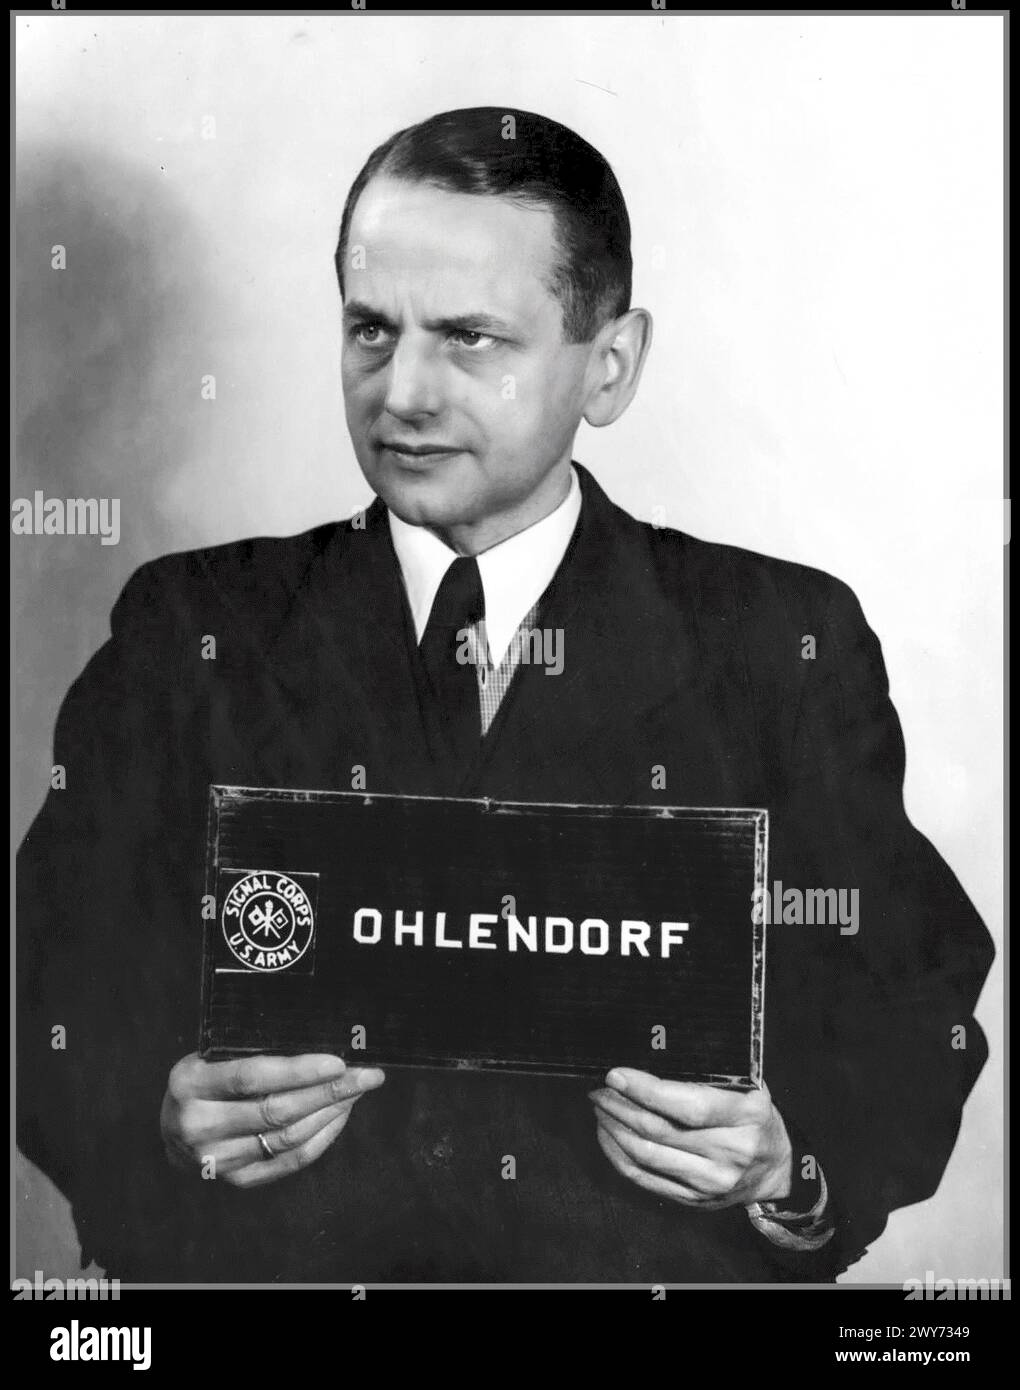 PROCESSO NAZISTA DI NORIMBERGA ex SS Gruppenführer otto Ohlendorf (1907-1951) durante il processo Einsatzgruppen di Norimberga. 1948 otto Ohlendorf, 4 febbraio 1907 – 7 giugno 1951) è stato un funzionario tedesco delle SS e autore dell'Olocausto durante l'era nazista. Economista per istruzione, era a capo della Sicherheitsdienst (SD) Inland, responsabile dell'intelligence e della sicurezza in Germania. Nel 1941, Ohlendorf nominò il comandante Einsatzgruppe D, che perpetrò omicidi di massa in Moldavia, Ucraina meridionale, Crimea e, nel 1942, nel Caucaso settentrionale. Processato e giustiziato per impiccagione nel 1951 Foto Stock